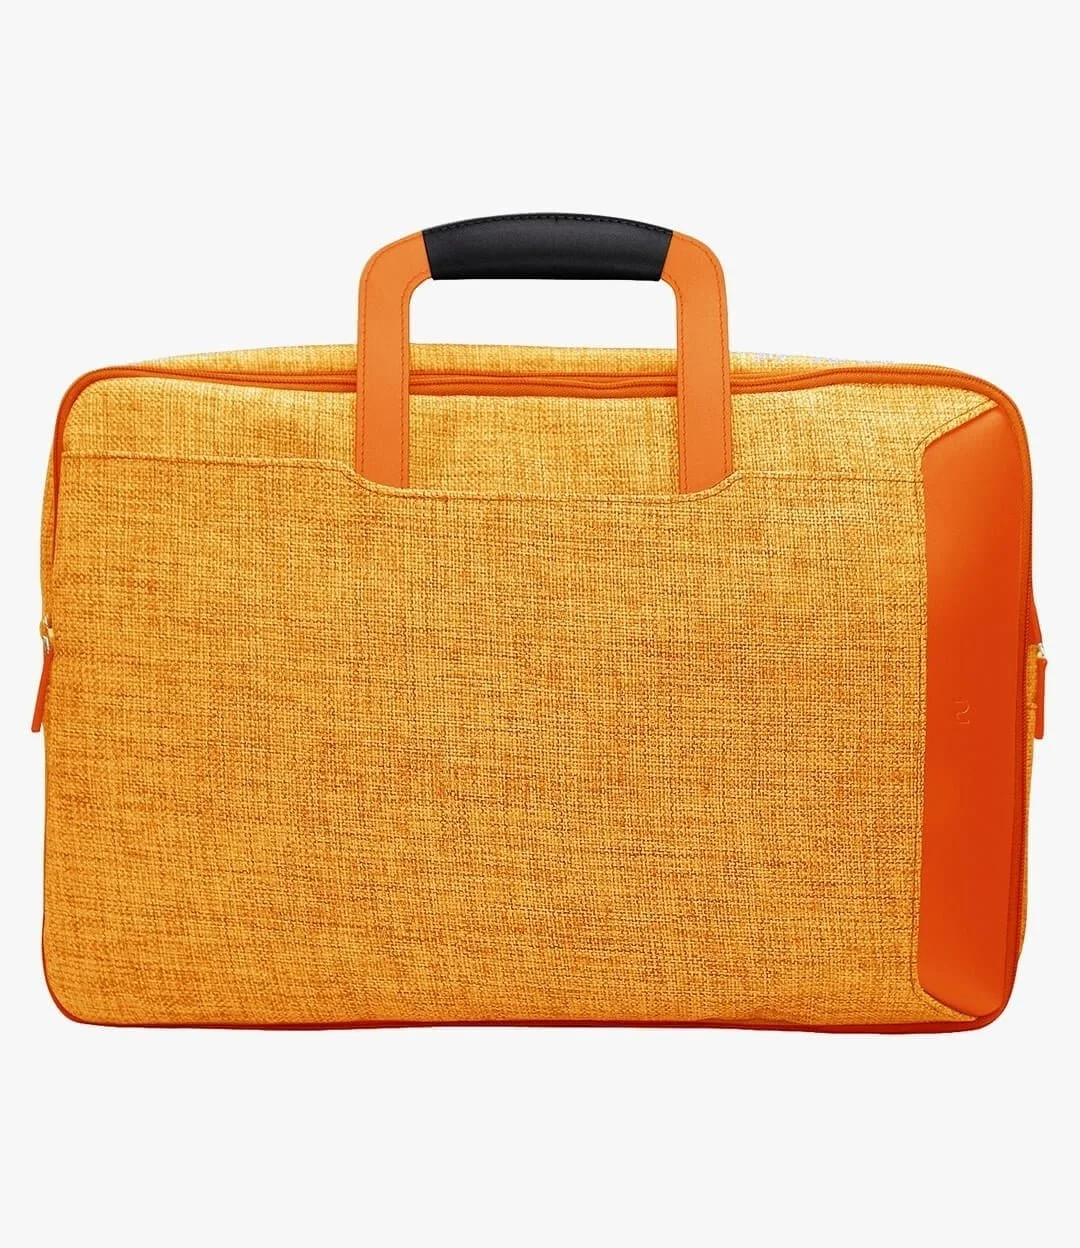 Quattro Sac Laptop Bag by Nu Design - Orange 